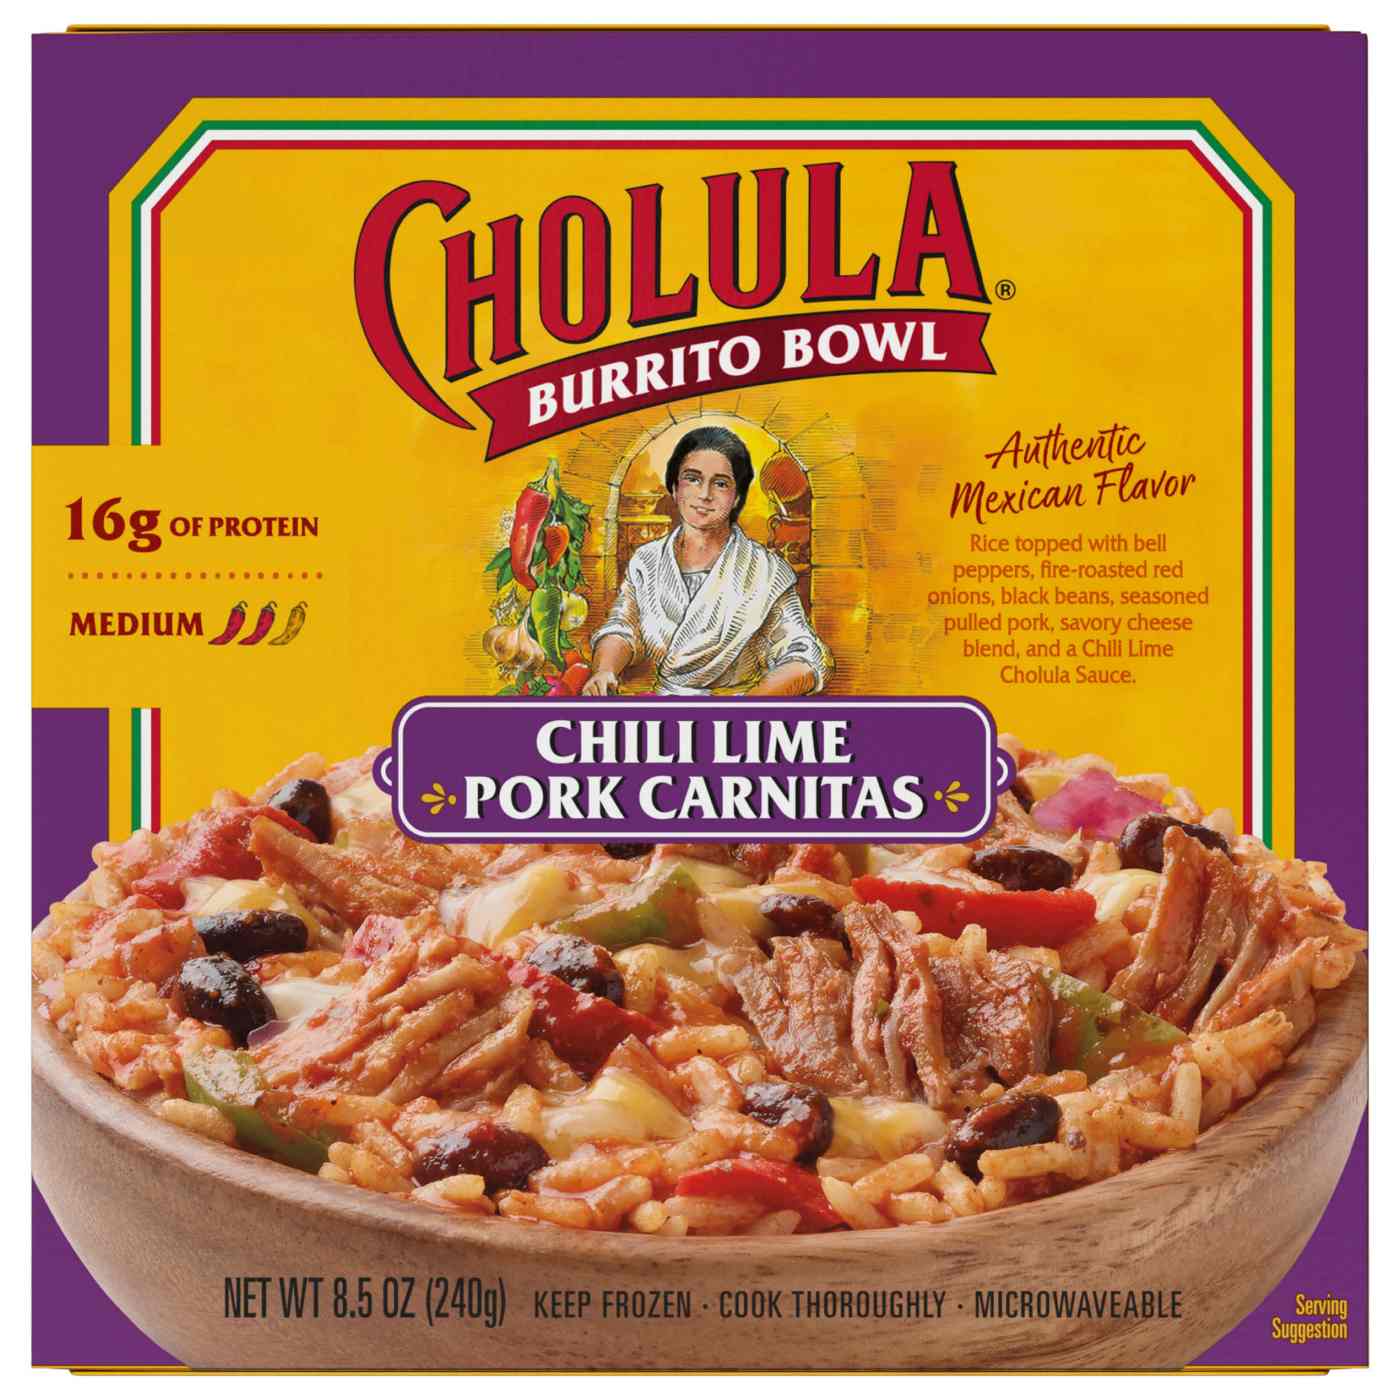 Cholula Burrito Bowl Chili Lime Pork Carnitas Frozen Meal; image 1 of 9